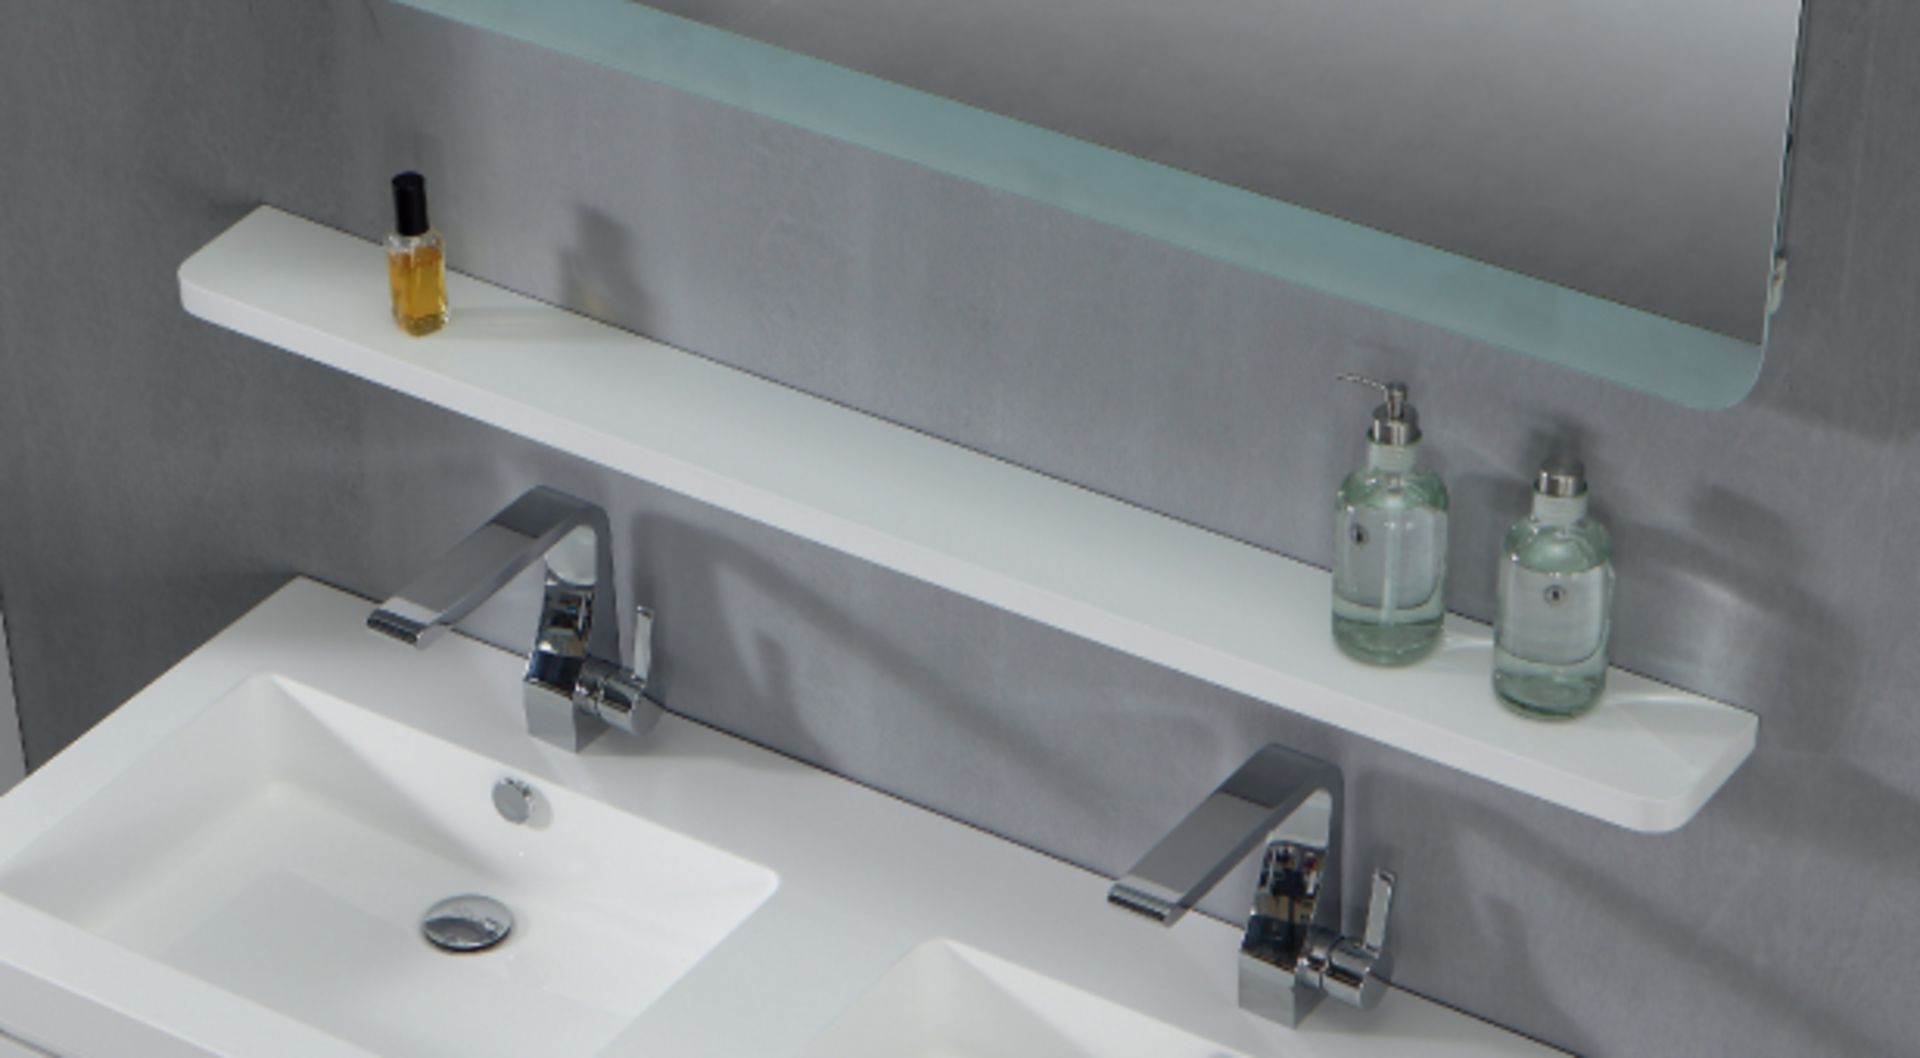 1 x Contemporary Bathroom Storage Shelf 120 - A-Grade - Ref:ASH120 - CL170 - Location: Nottingham